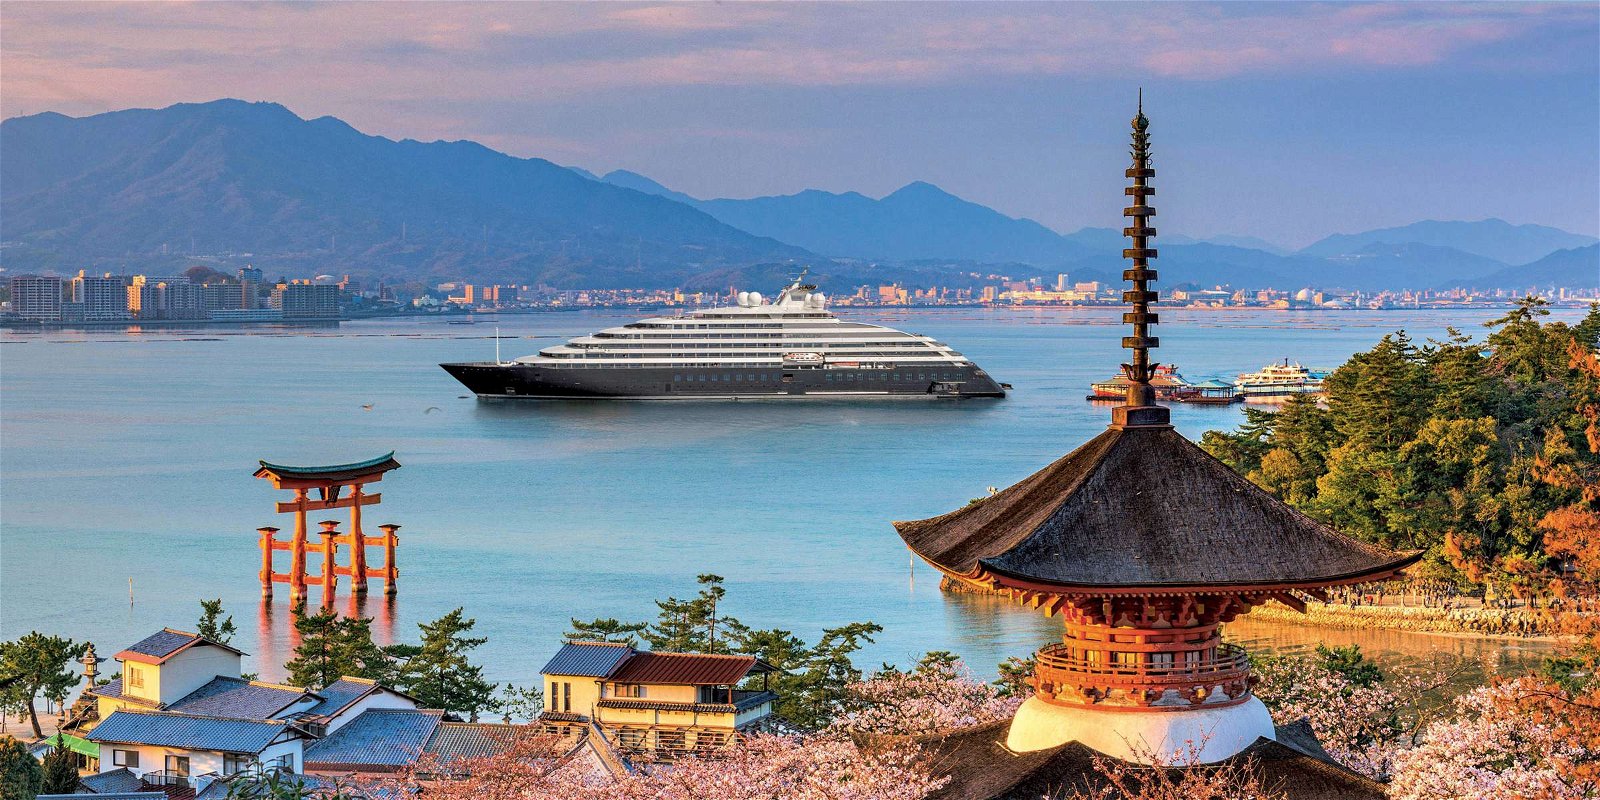 Scenic Luxury Cruises & Tours